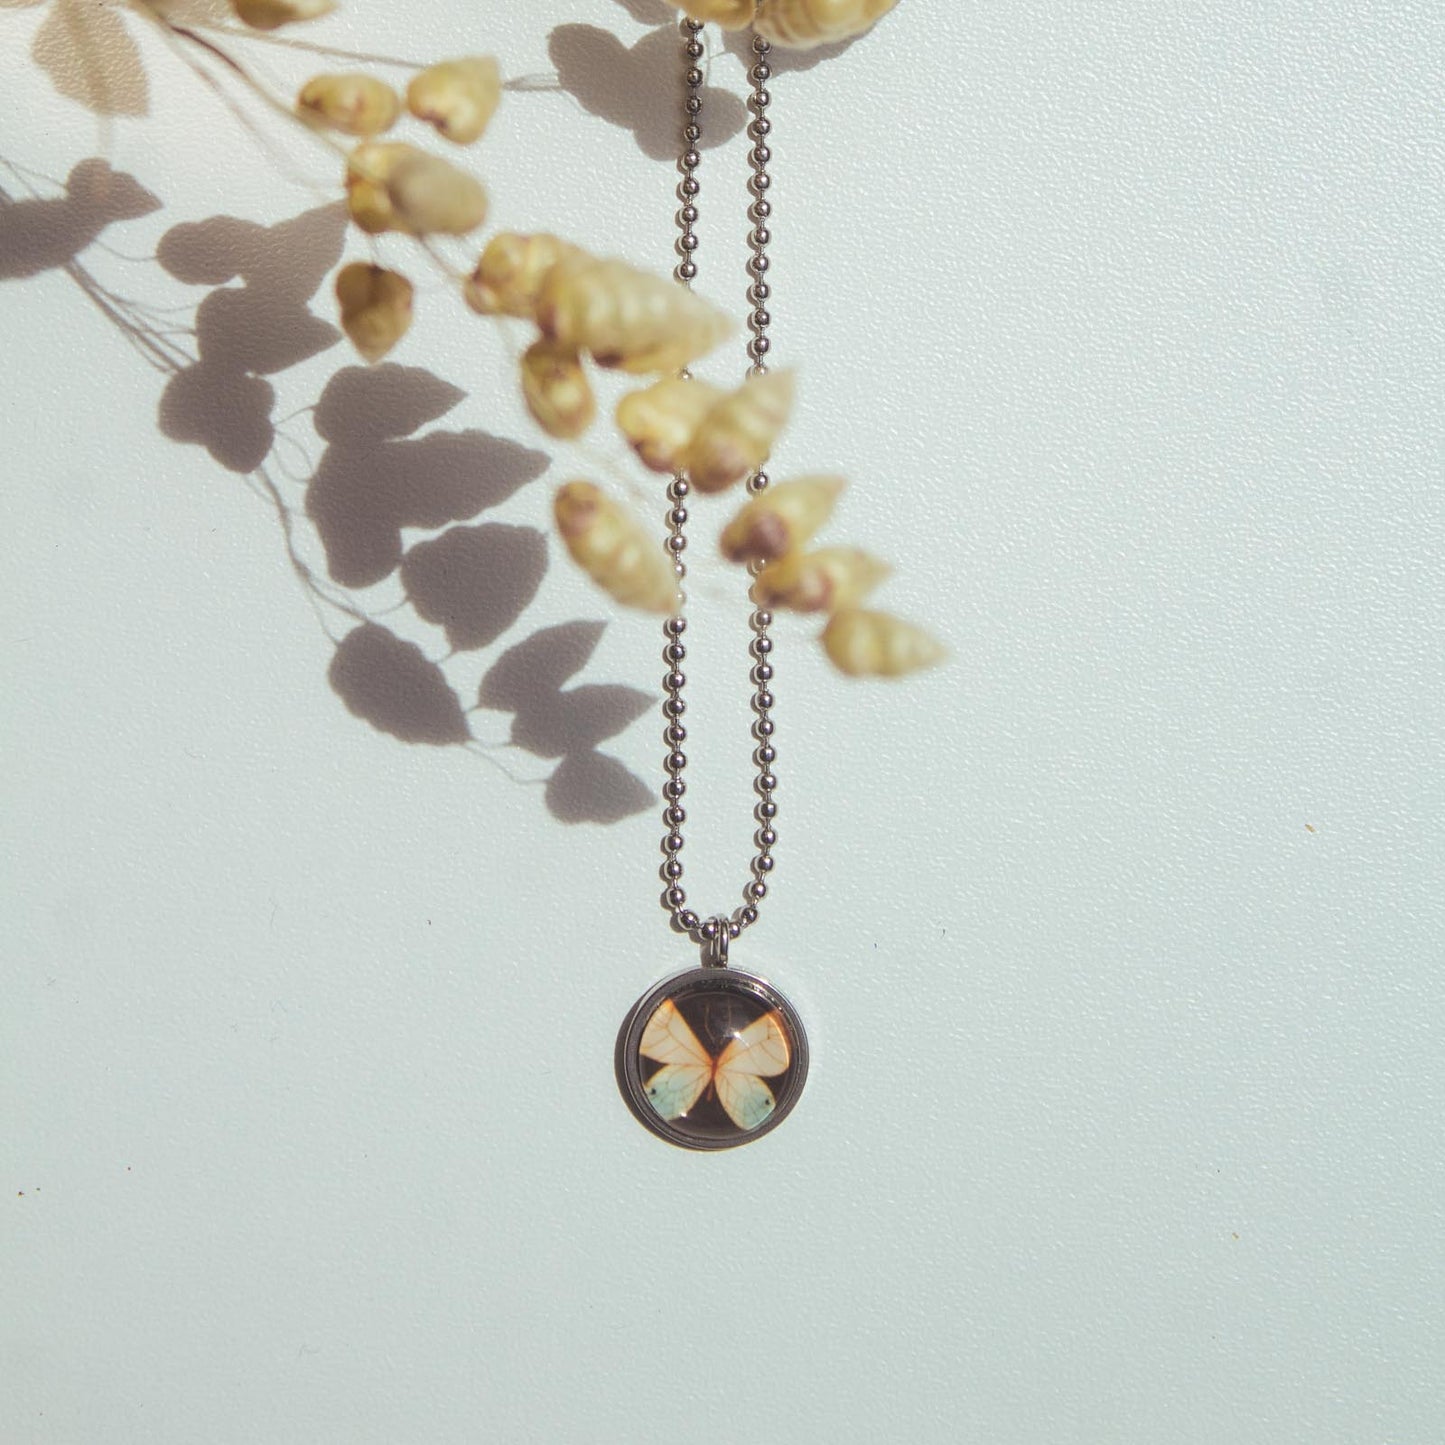 Halskette Schmetterling - Collection "Jardineiros" - Edelstahl